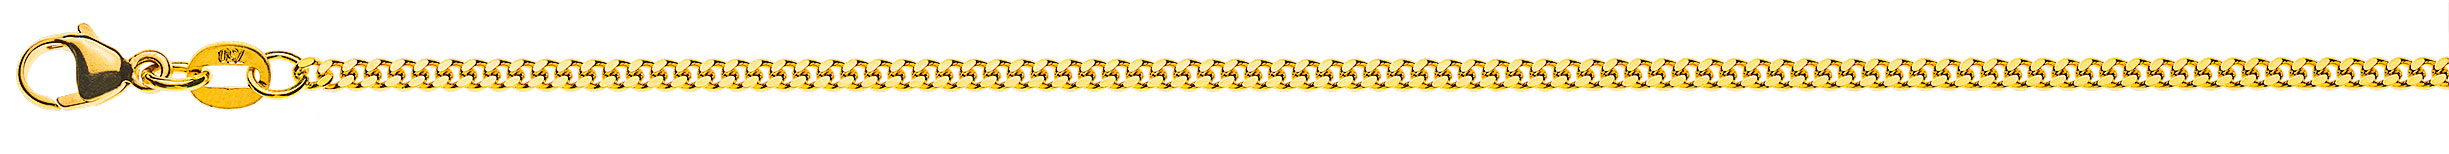 AURONOS Prestige Collier en or jaune 18 carats panzer poncé 55cm 2.0mm